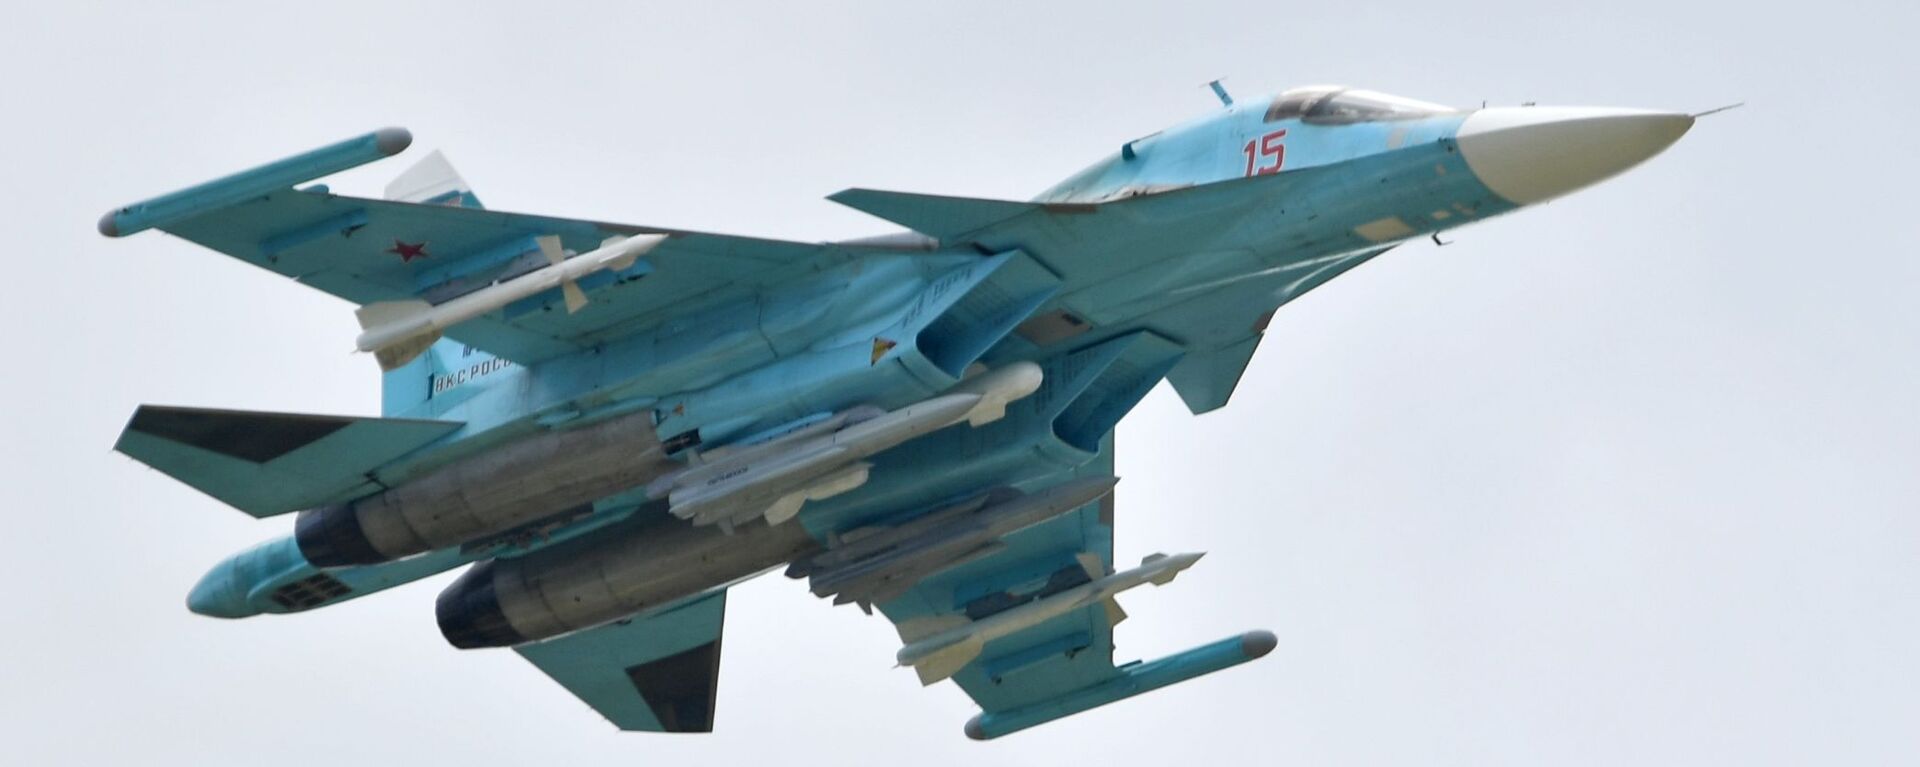 Российский многоцелевой истребитель-бомбардировщик Су-34 выполняет демонстрационный полет на авиасалоне МАКС-2019  - Sputnik Узбекистан, 1920, 05.06.2021